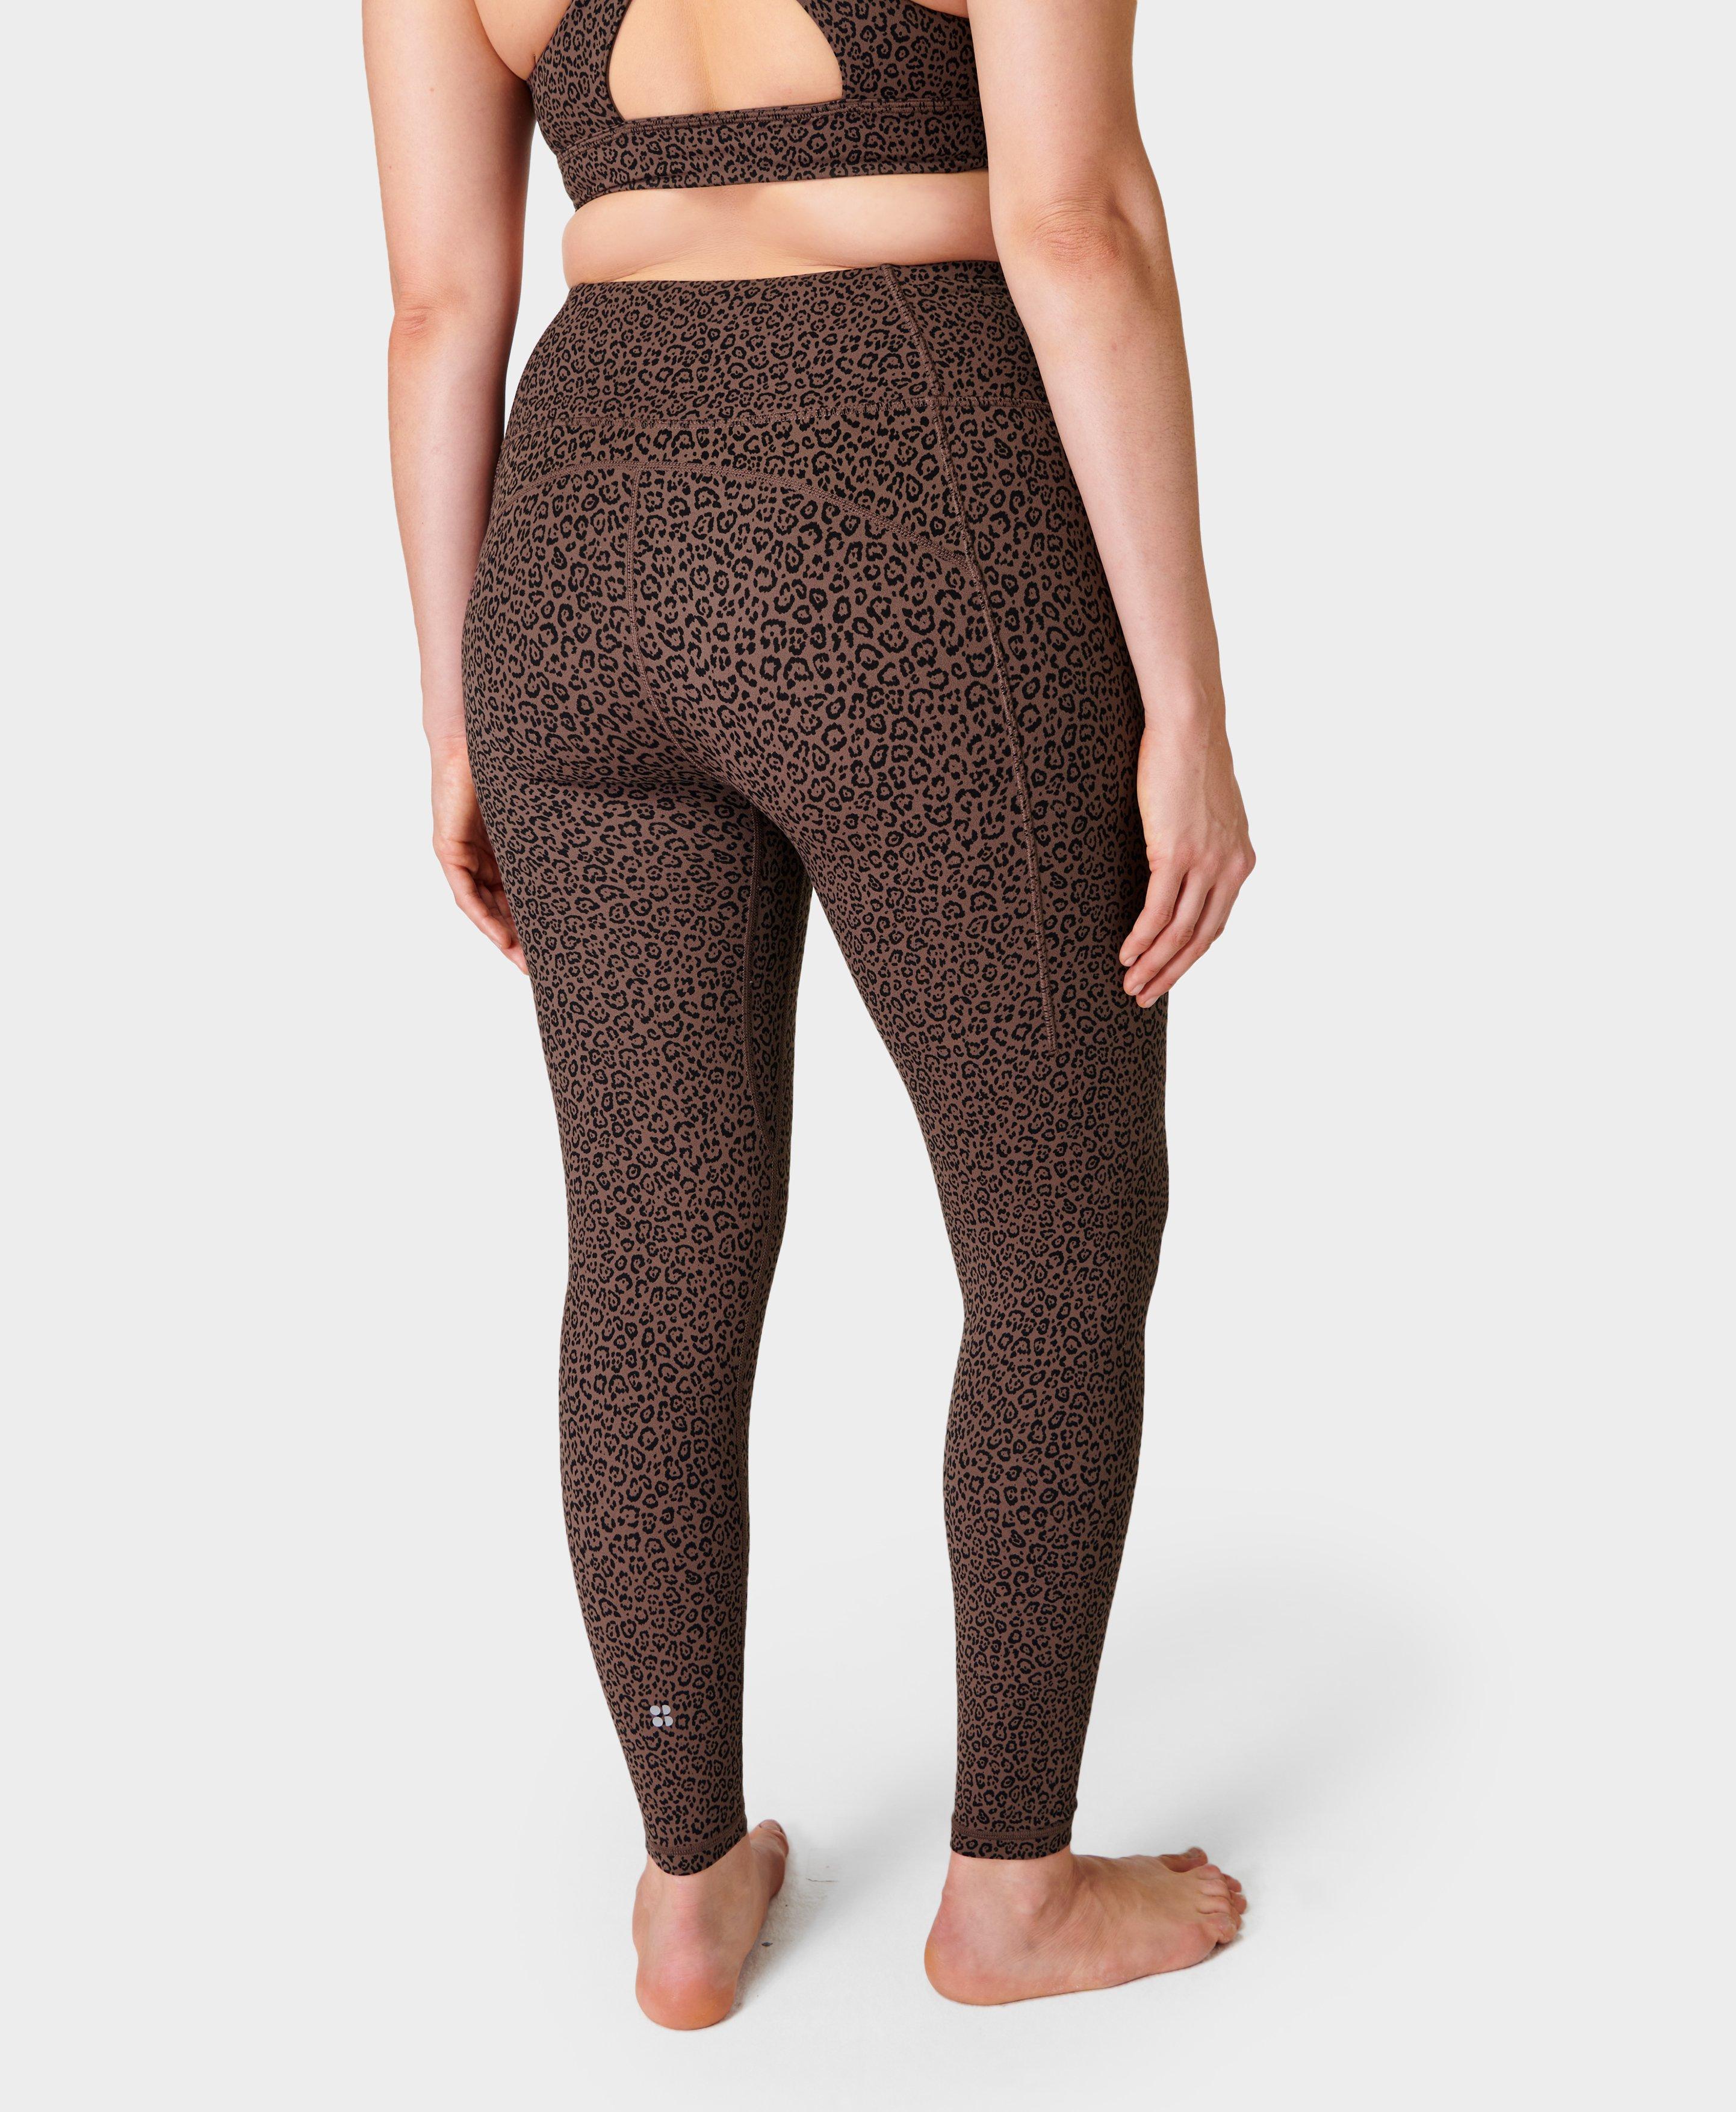 Soft Cotton Yoga Leggings, Leopard Print Leggings, Thick Cotton